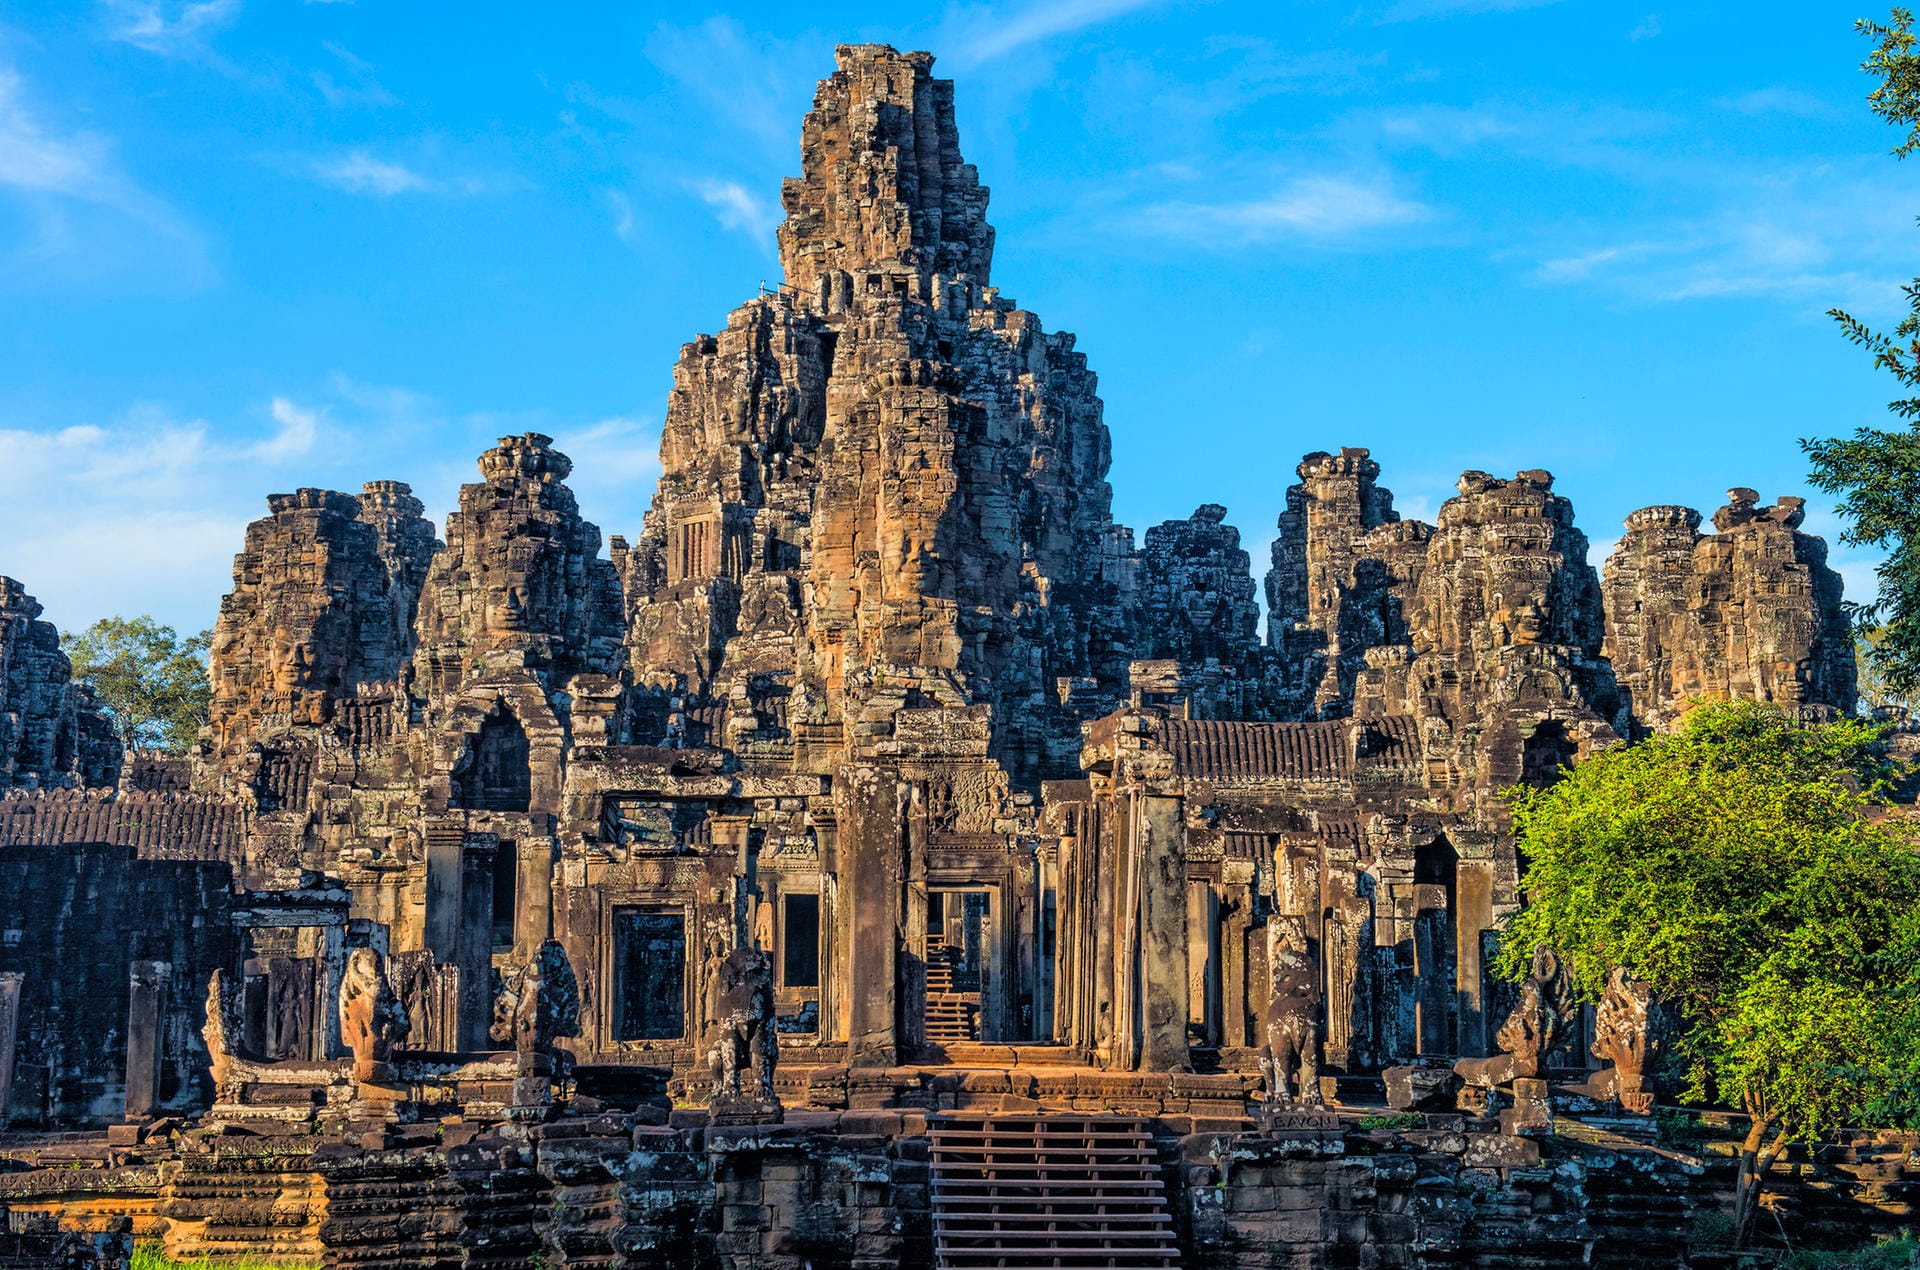 Angkor Vat Tempel in Kambodscha: Ein Besuch der Tempelanlage Angkor Vat ist bei vielen Touristen beliebt und vergleichsweise günstig.